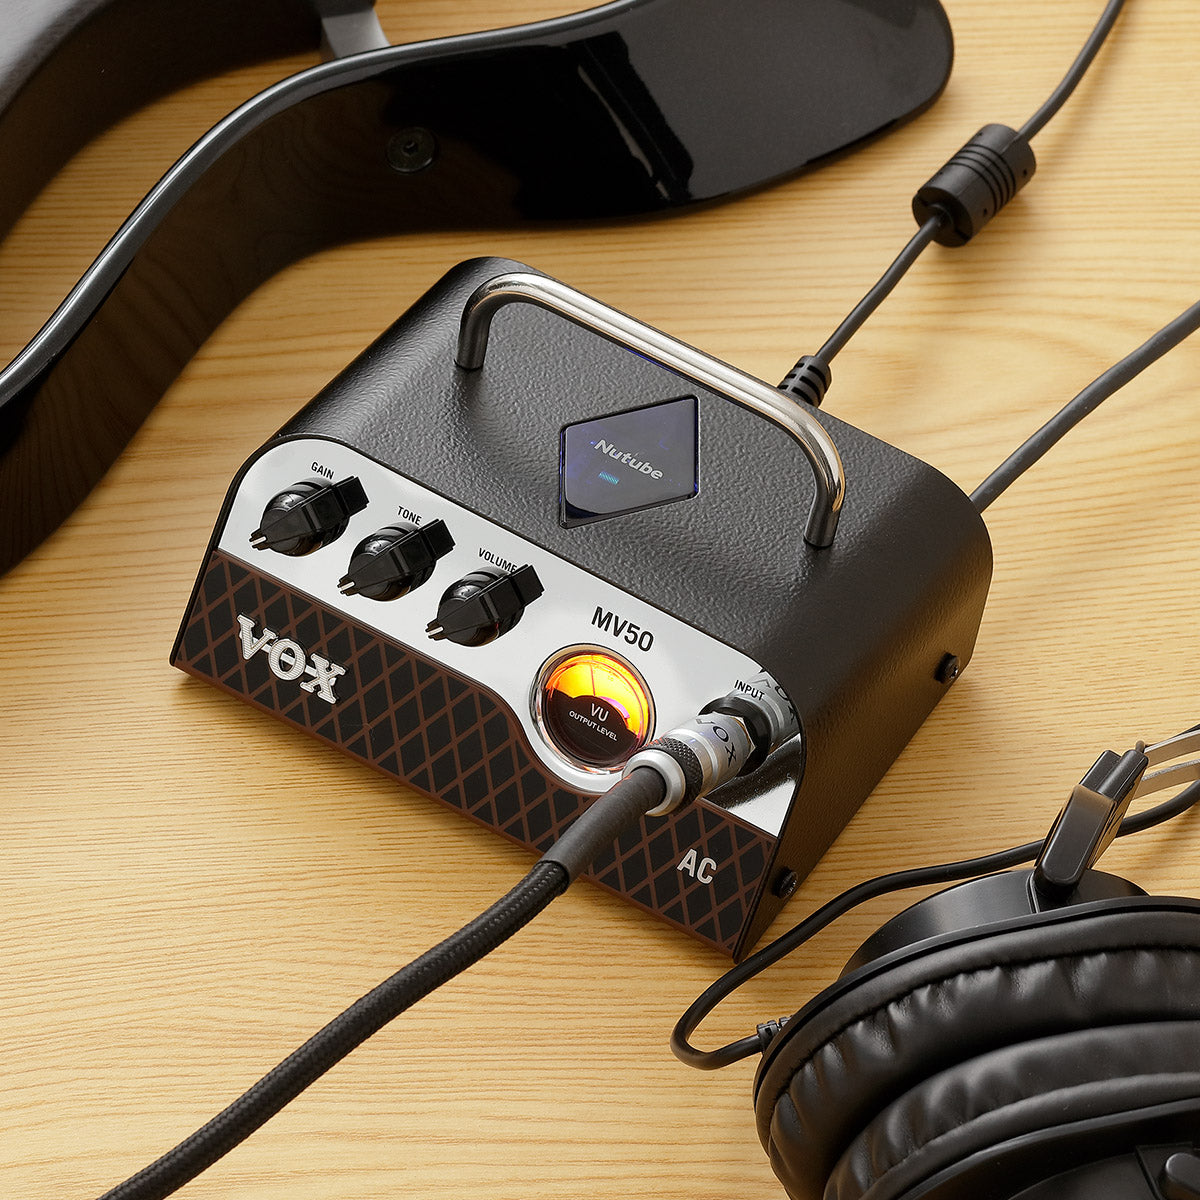 VOX Amps USA | MV50 AC Mini Amplifier Head | Shop Now